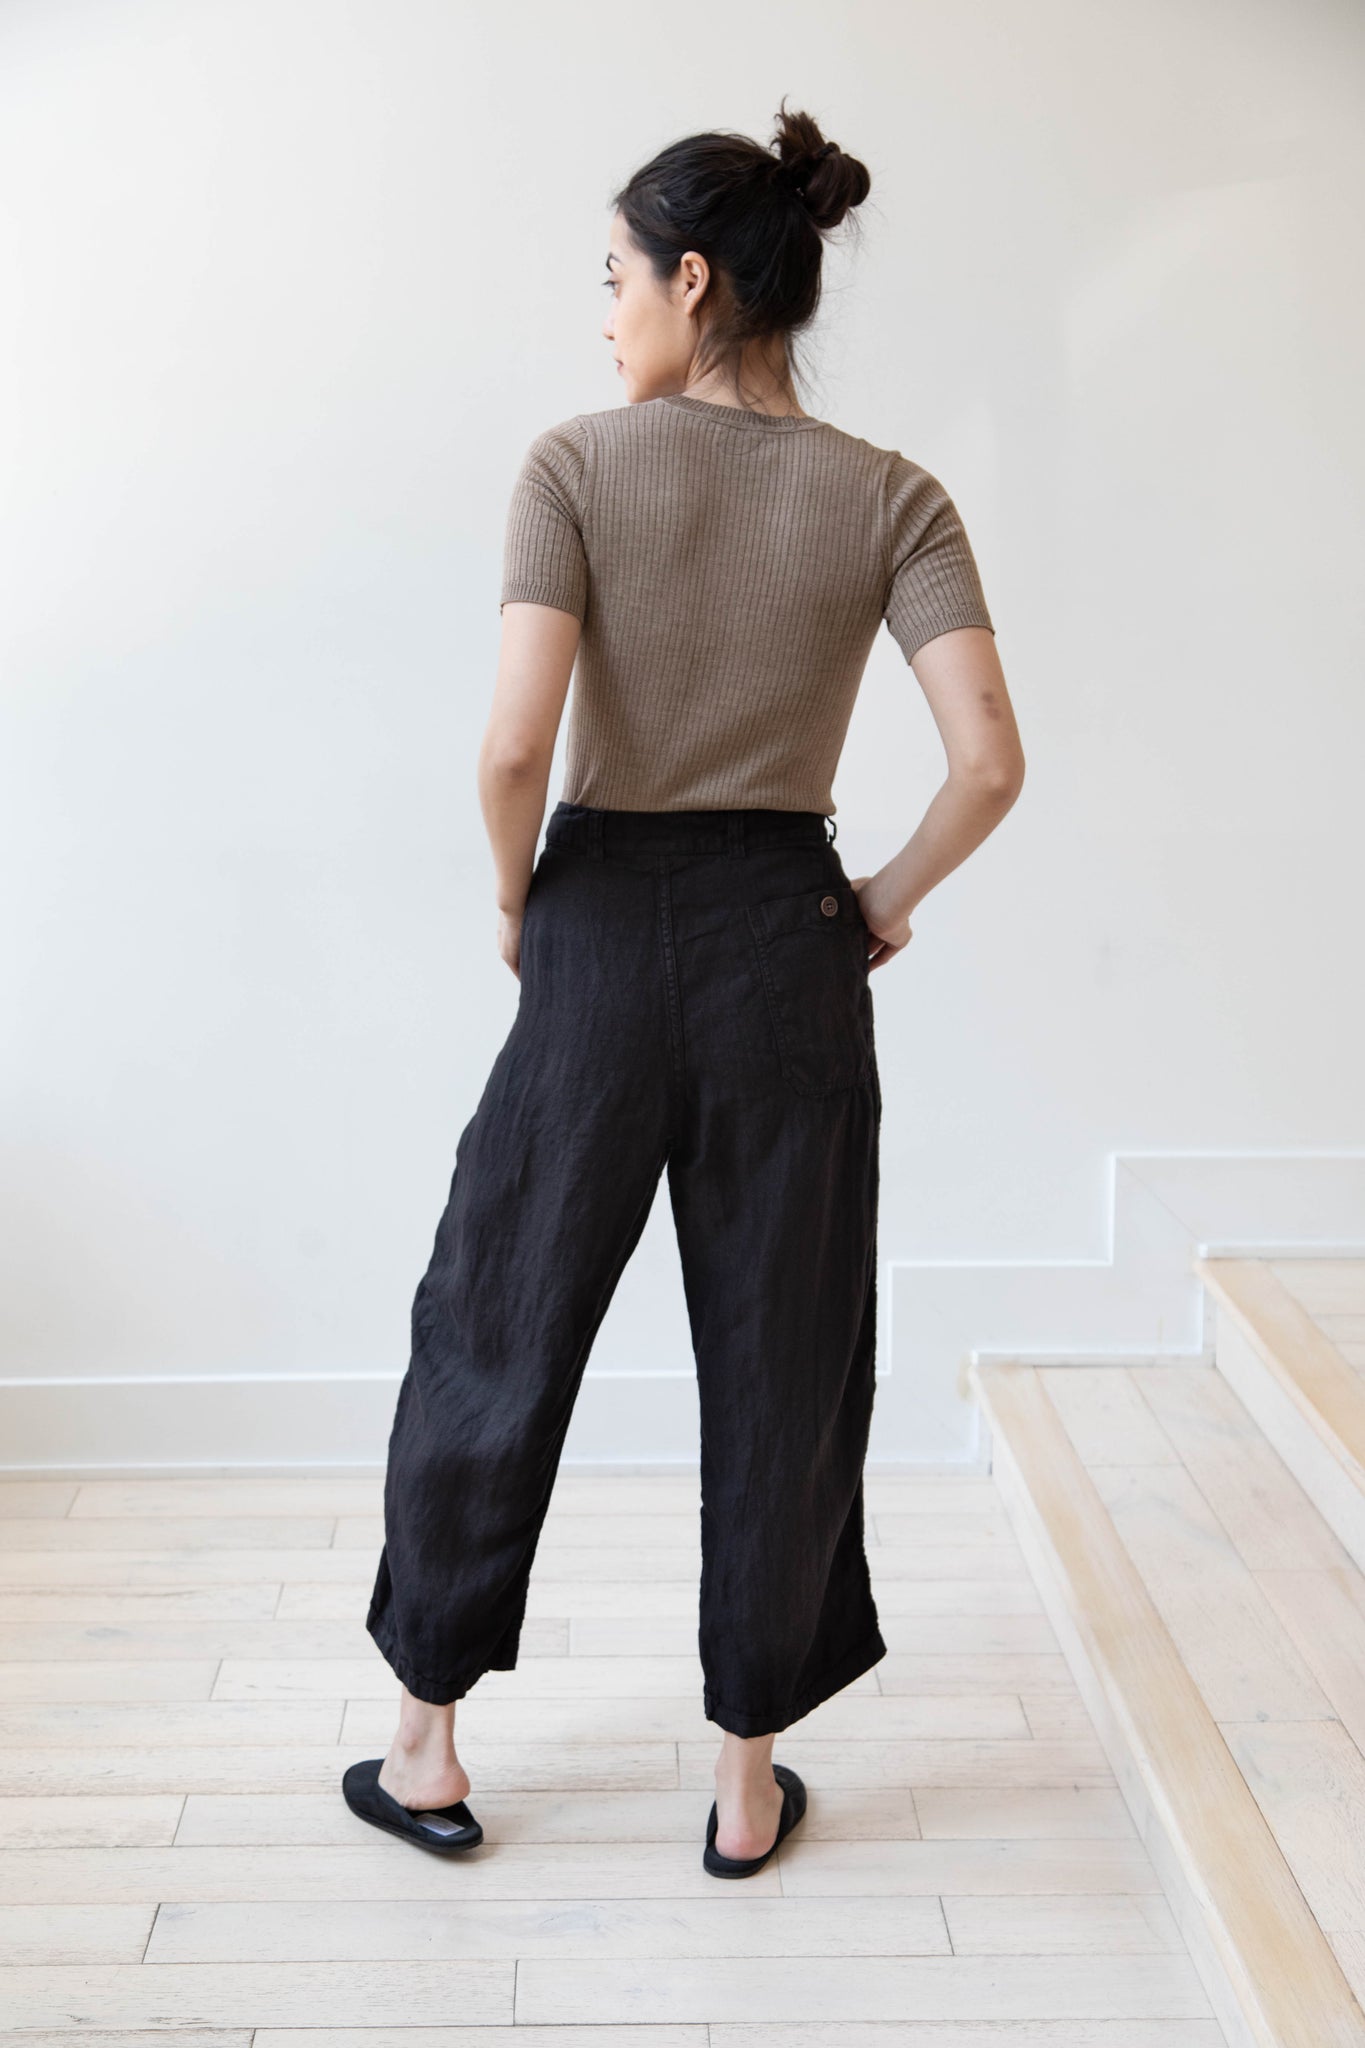 Armen | Tuck Pants in Black Twill Linen